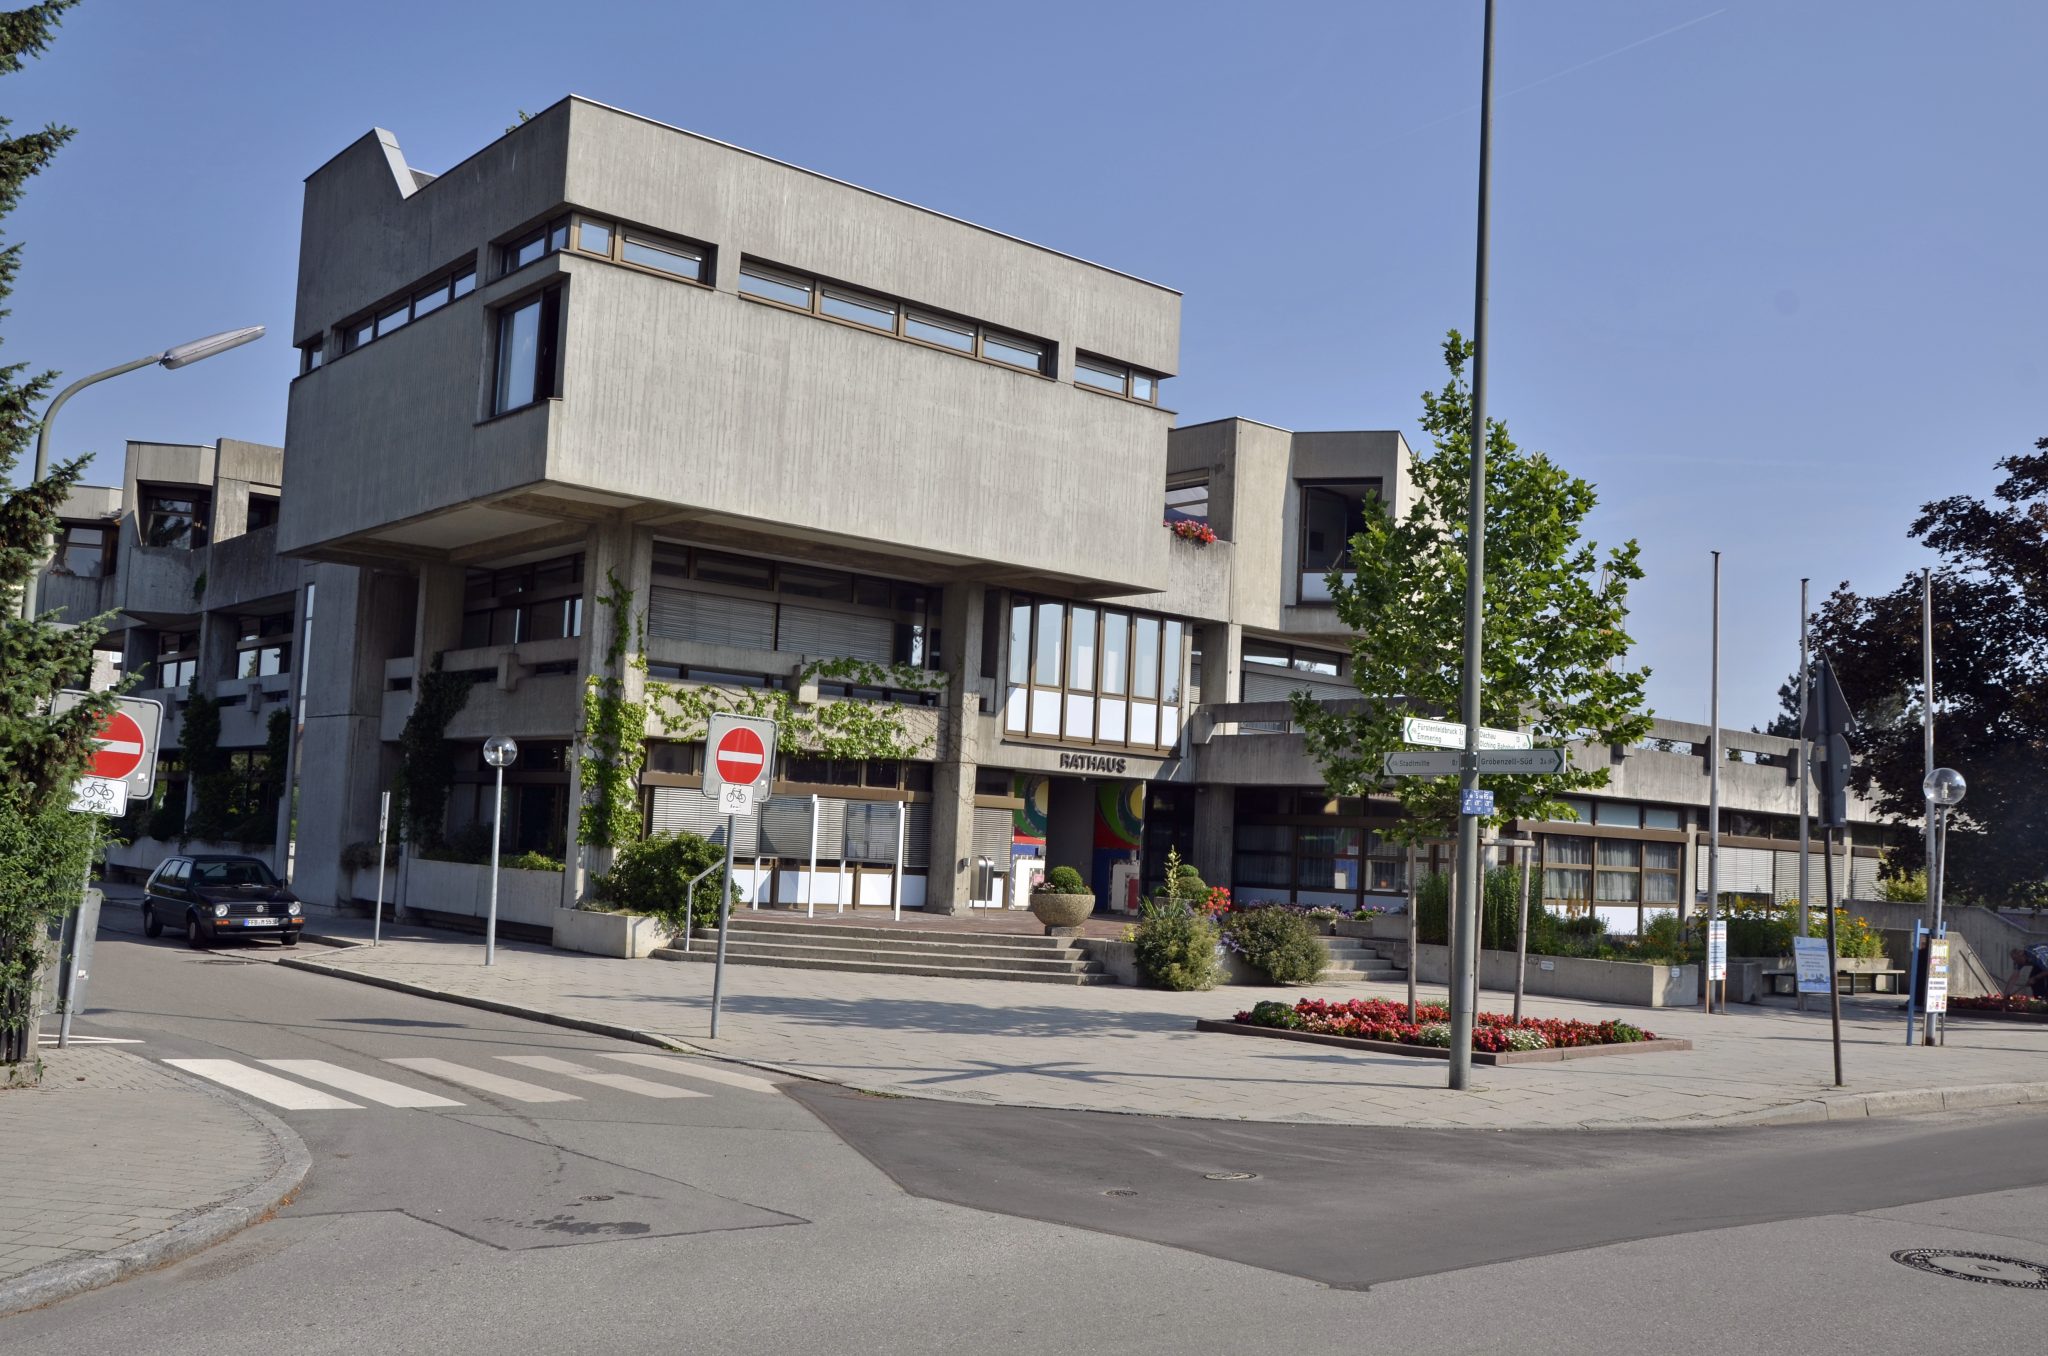 Rathaus von Olching: Foto: Bürgermeister sucht Wohnungen für Moria-Migranten